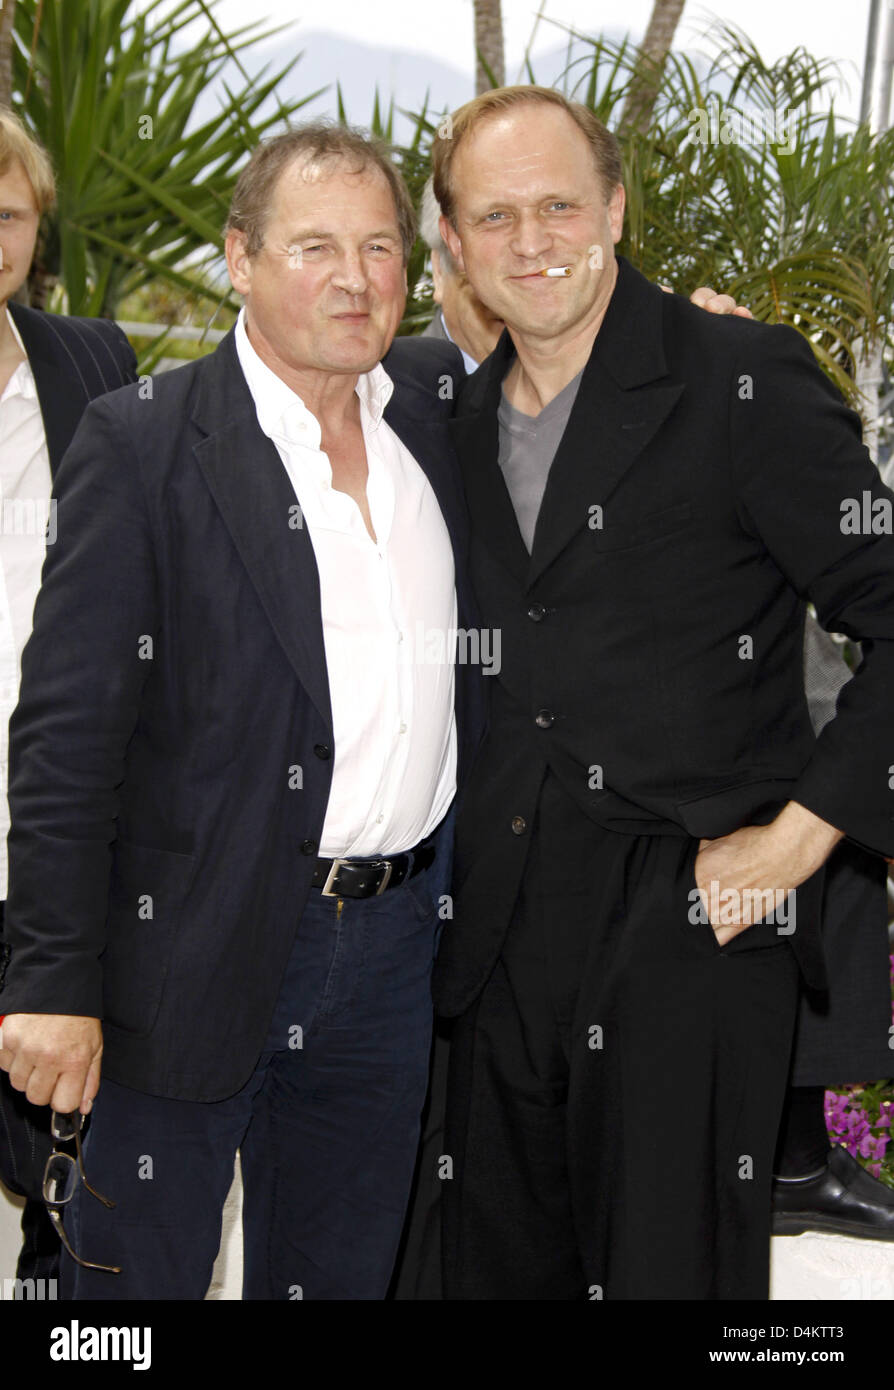 Schauspieler Burghart Klaußner (L) und Ulrich Tukur posieren vor der Pressekonferenz des Films? Das weiße Band? bei den 62. Filmfestspielen in Cannes, Frankreich Mai 21. 2009. Foto: Hubert Boesl Stockfoto